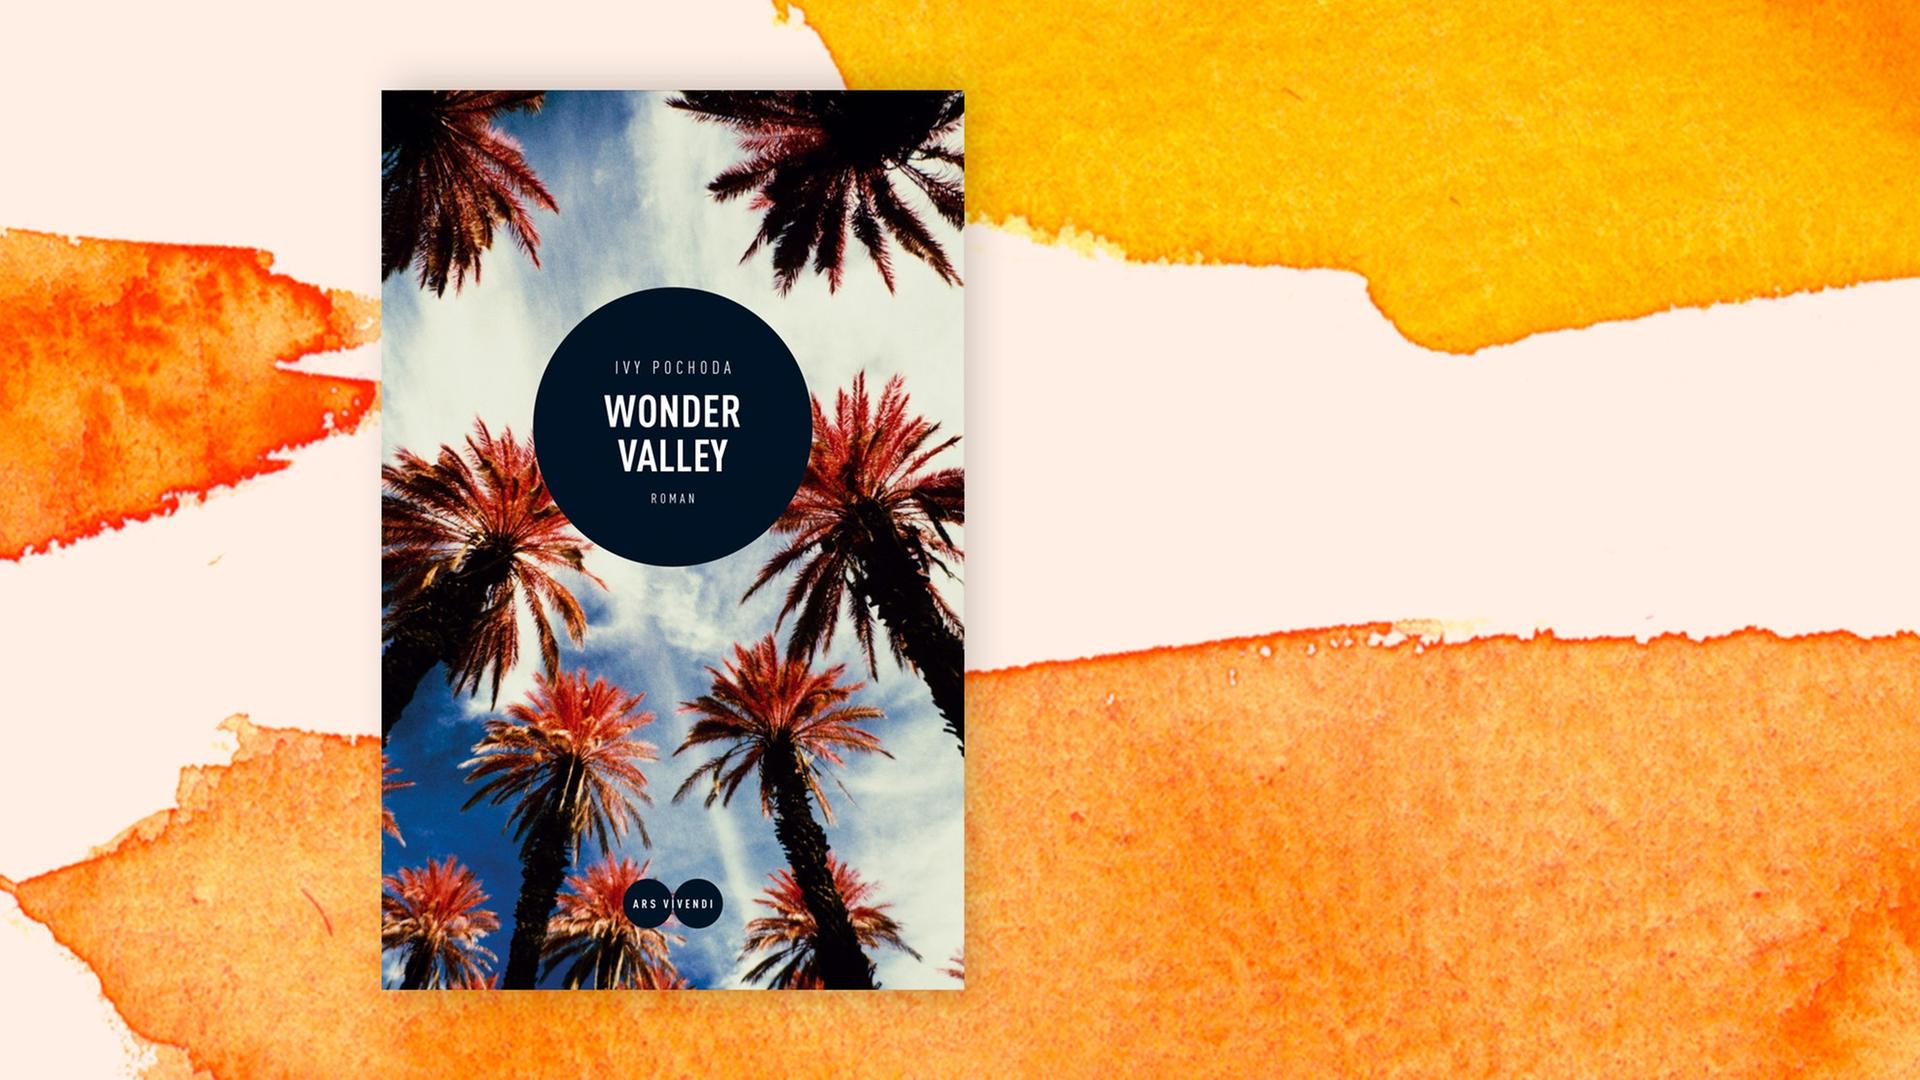 Die Abbildung zeigt das Cover des Buches Wonder Valley.